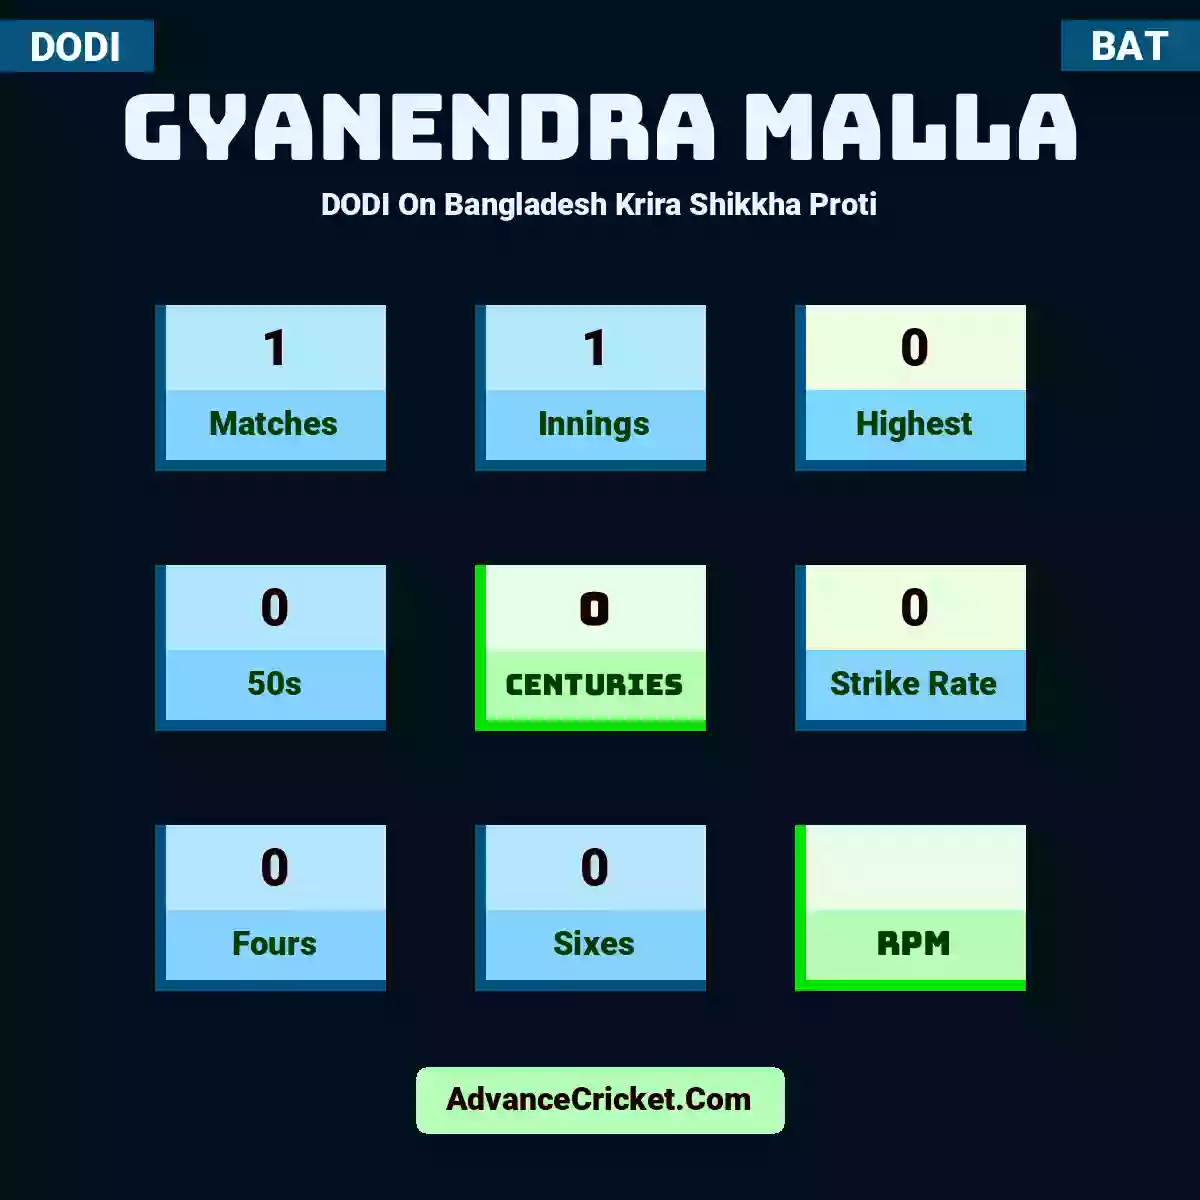 Gyanendra Malla DODI  On Bangladesh Krira Shikkha Proti, Gyanendra Malla played 1 matches, scored 0 runs as highest, 0 half-centuries, and 0 centuries, with a strike rate of 0. G.Malla hit 0 fours and 0 sixes.